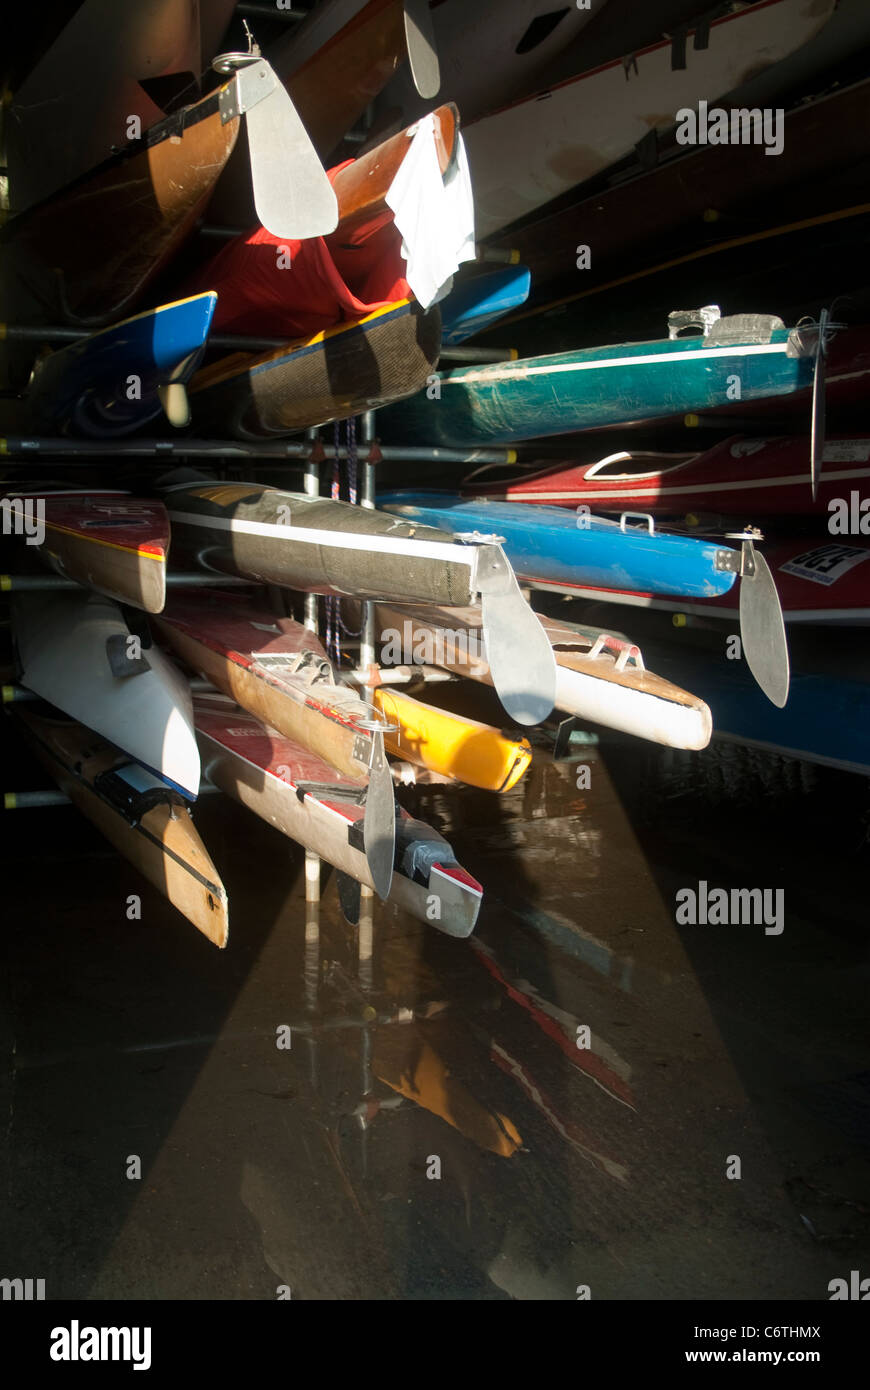 Canots et kayaks dans un hangar à Richmond, Londres Banque D'Images